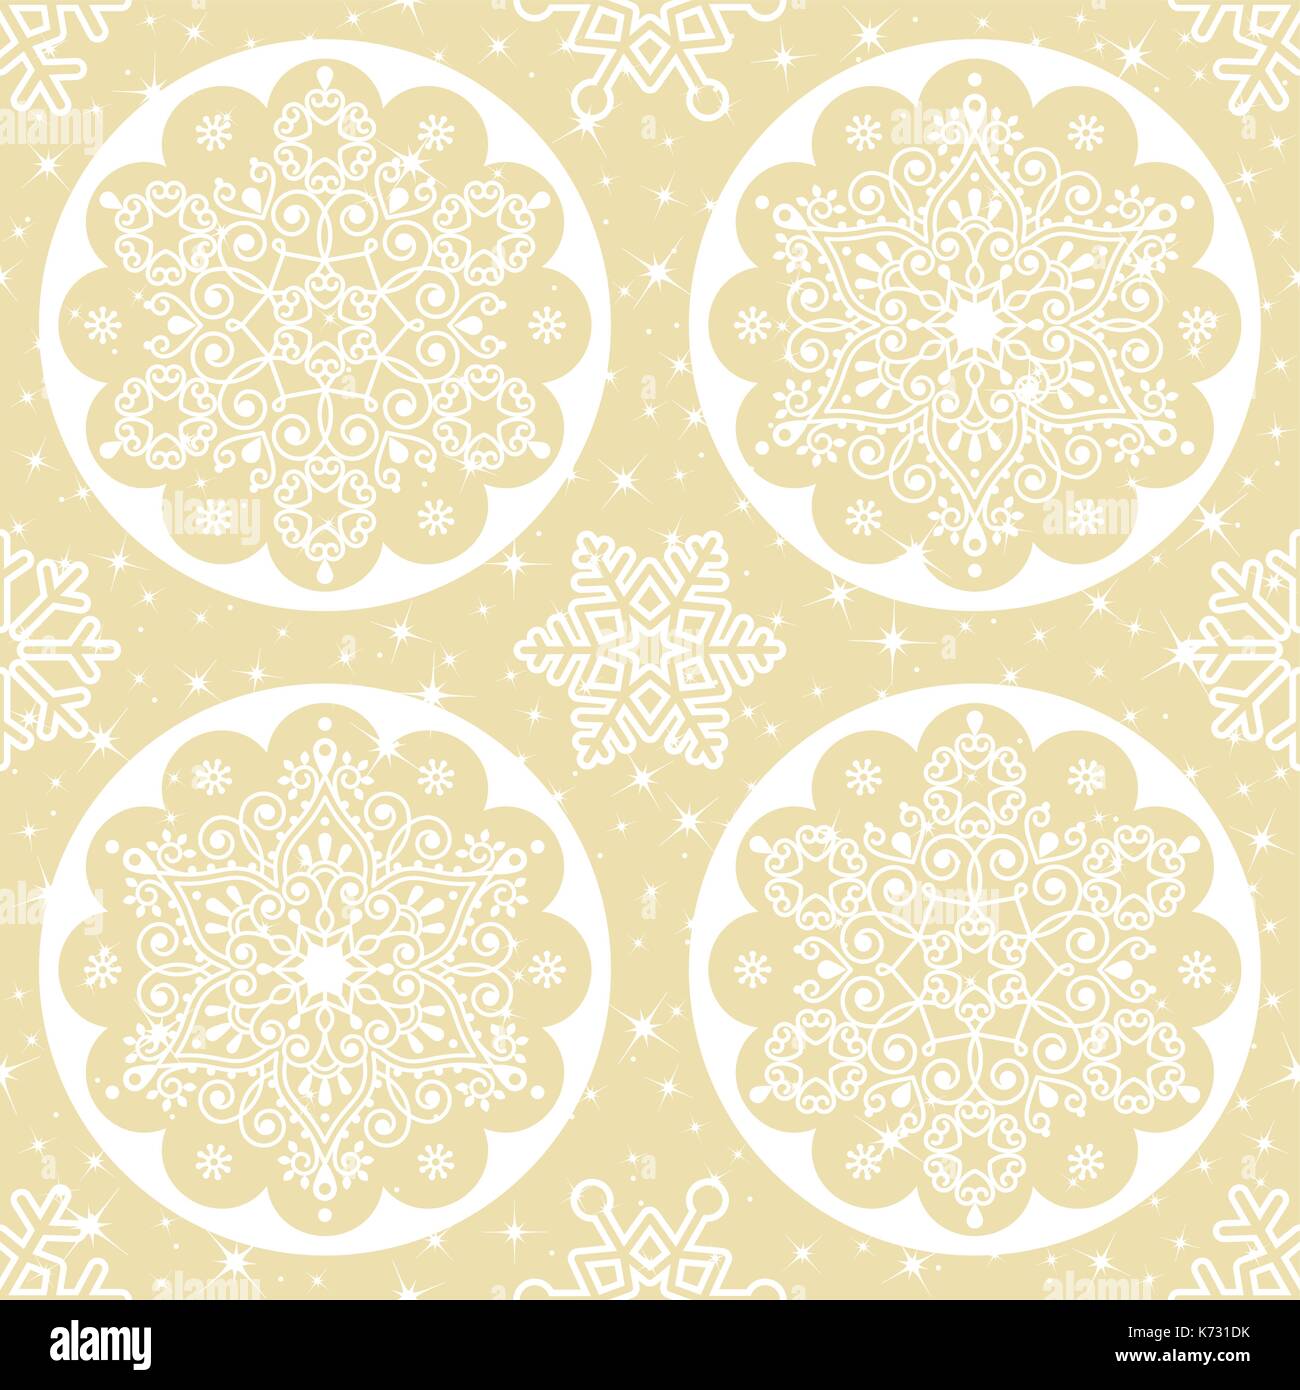 Weihnachten Vektor folk Muster - weiße Schneeflocke Mandala nahtloses Design auf Gold Hintergrund, skandinavischen Stil Xmas Wallpaper, Geschenkpapier oder texti Stock Vektor